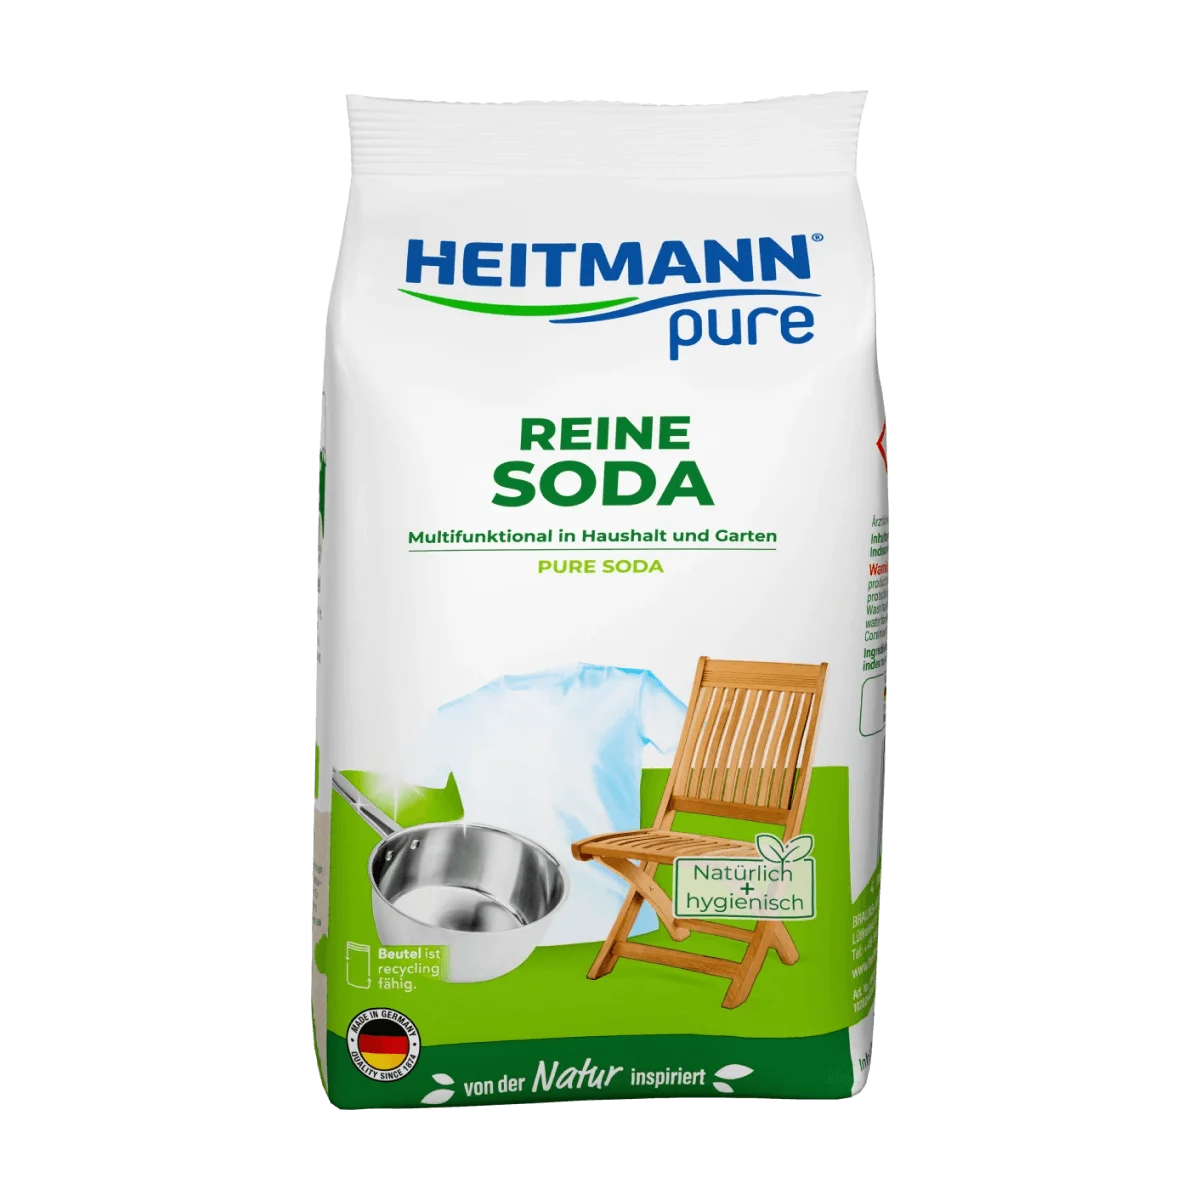 Heitmann Pure Reine Soda Pulver Multifunktional, 500 g